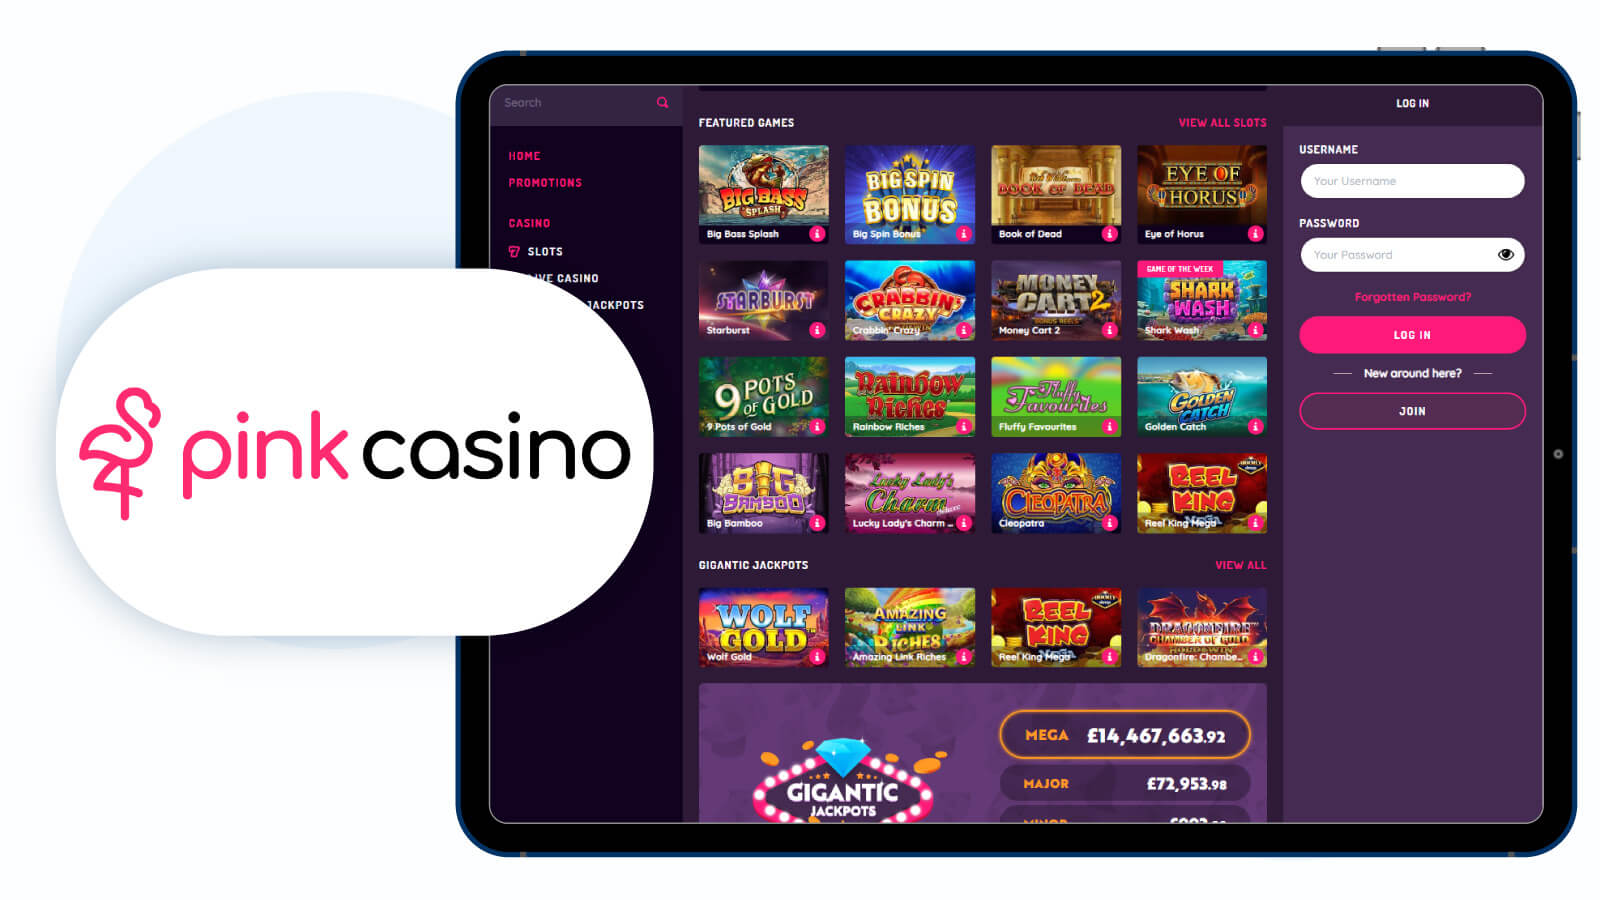 Pink casino homepage